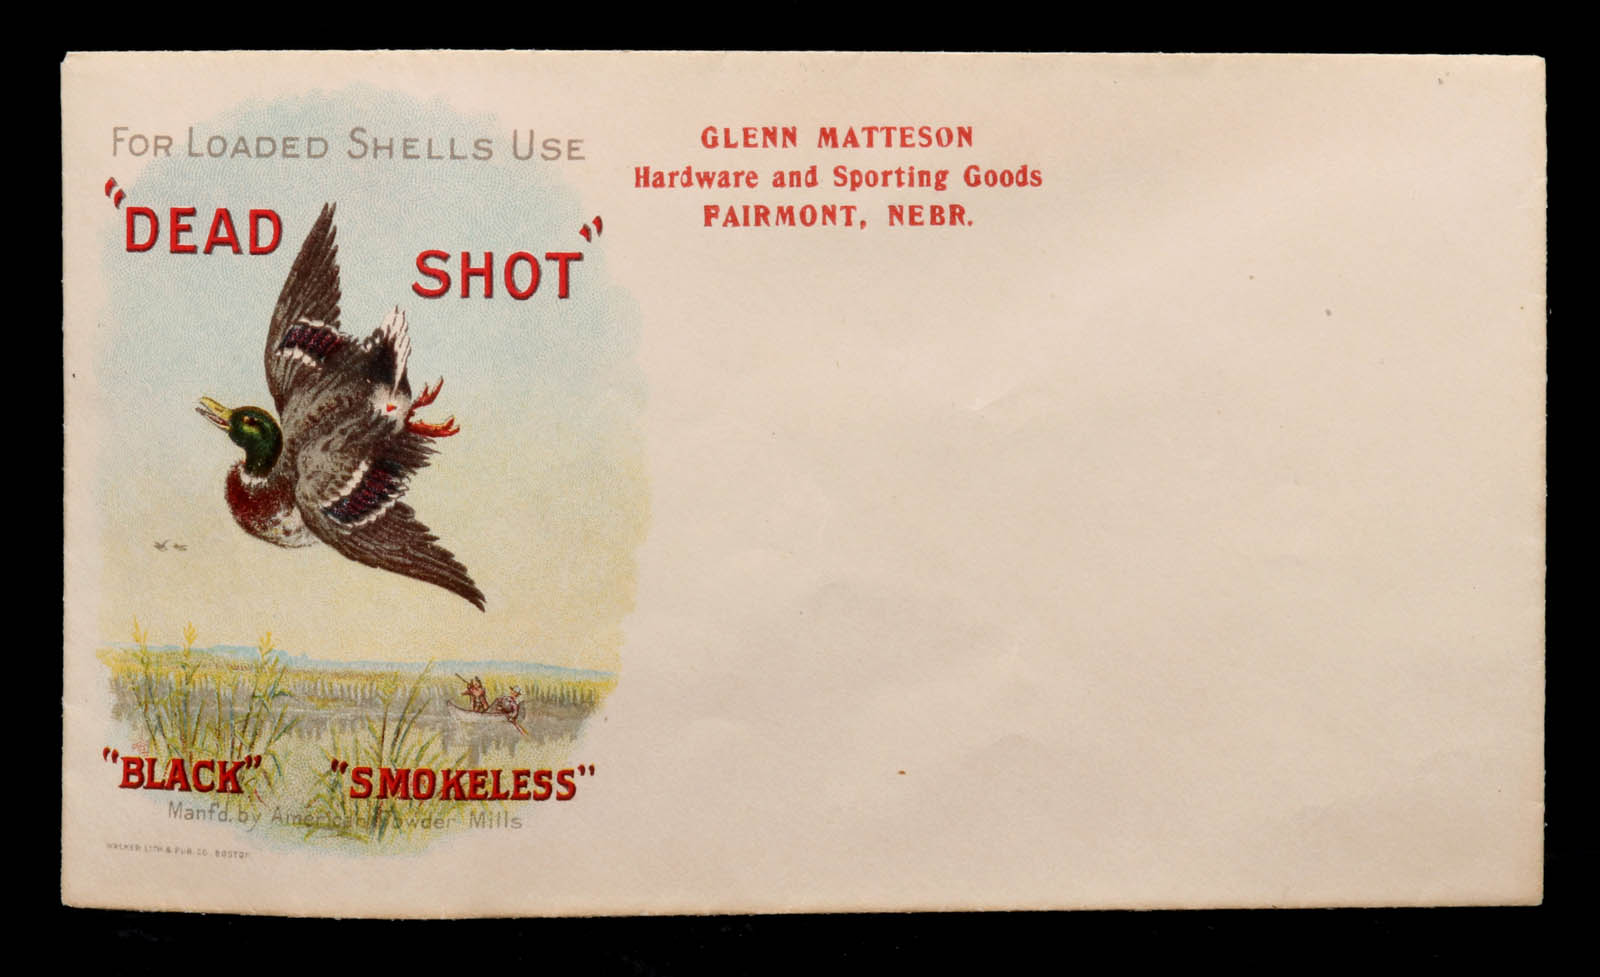 A DEAD SHOT SHELLS ADVERTISING ENVELOPE CIRCA 1915